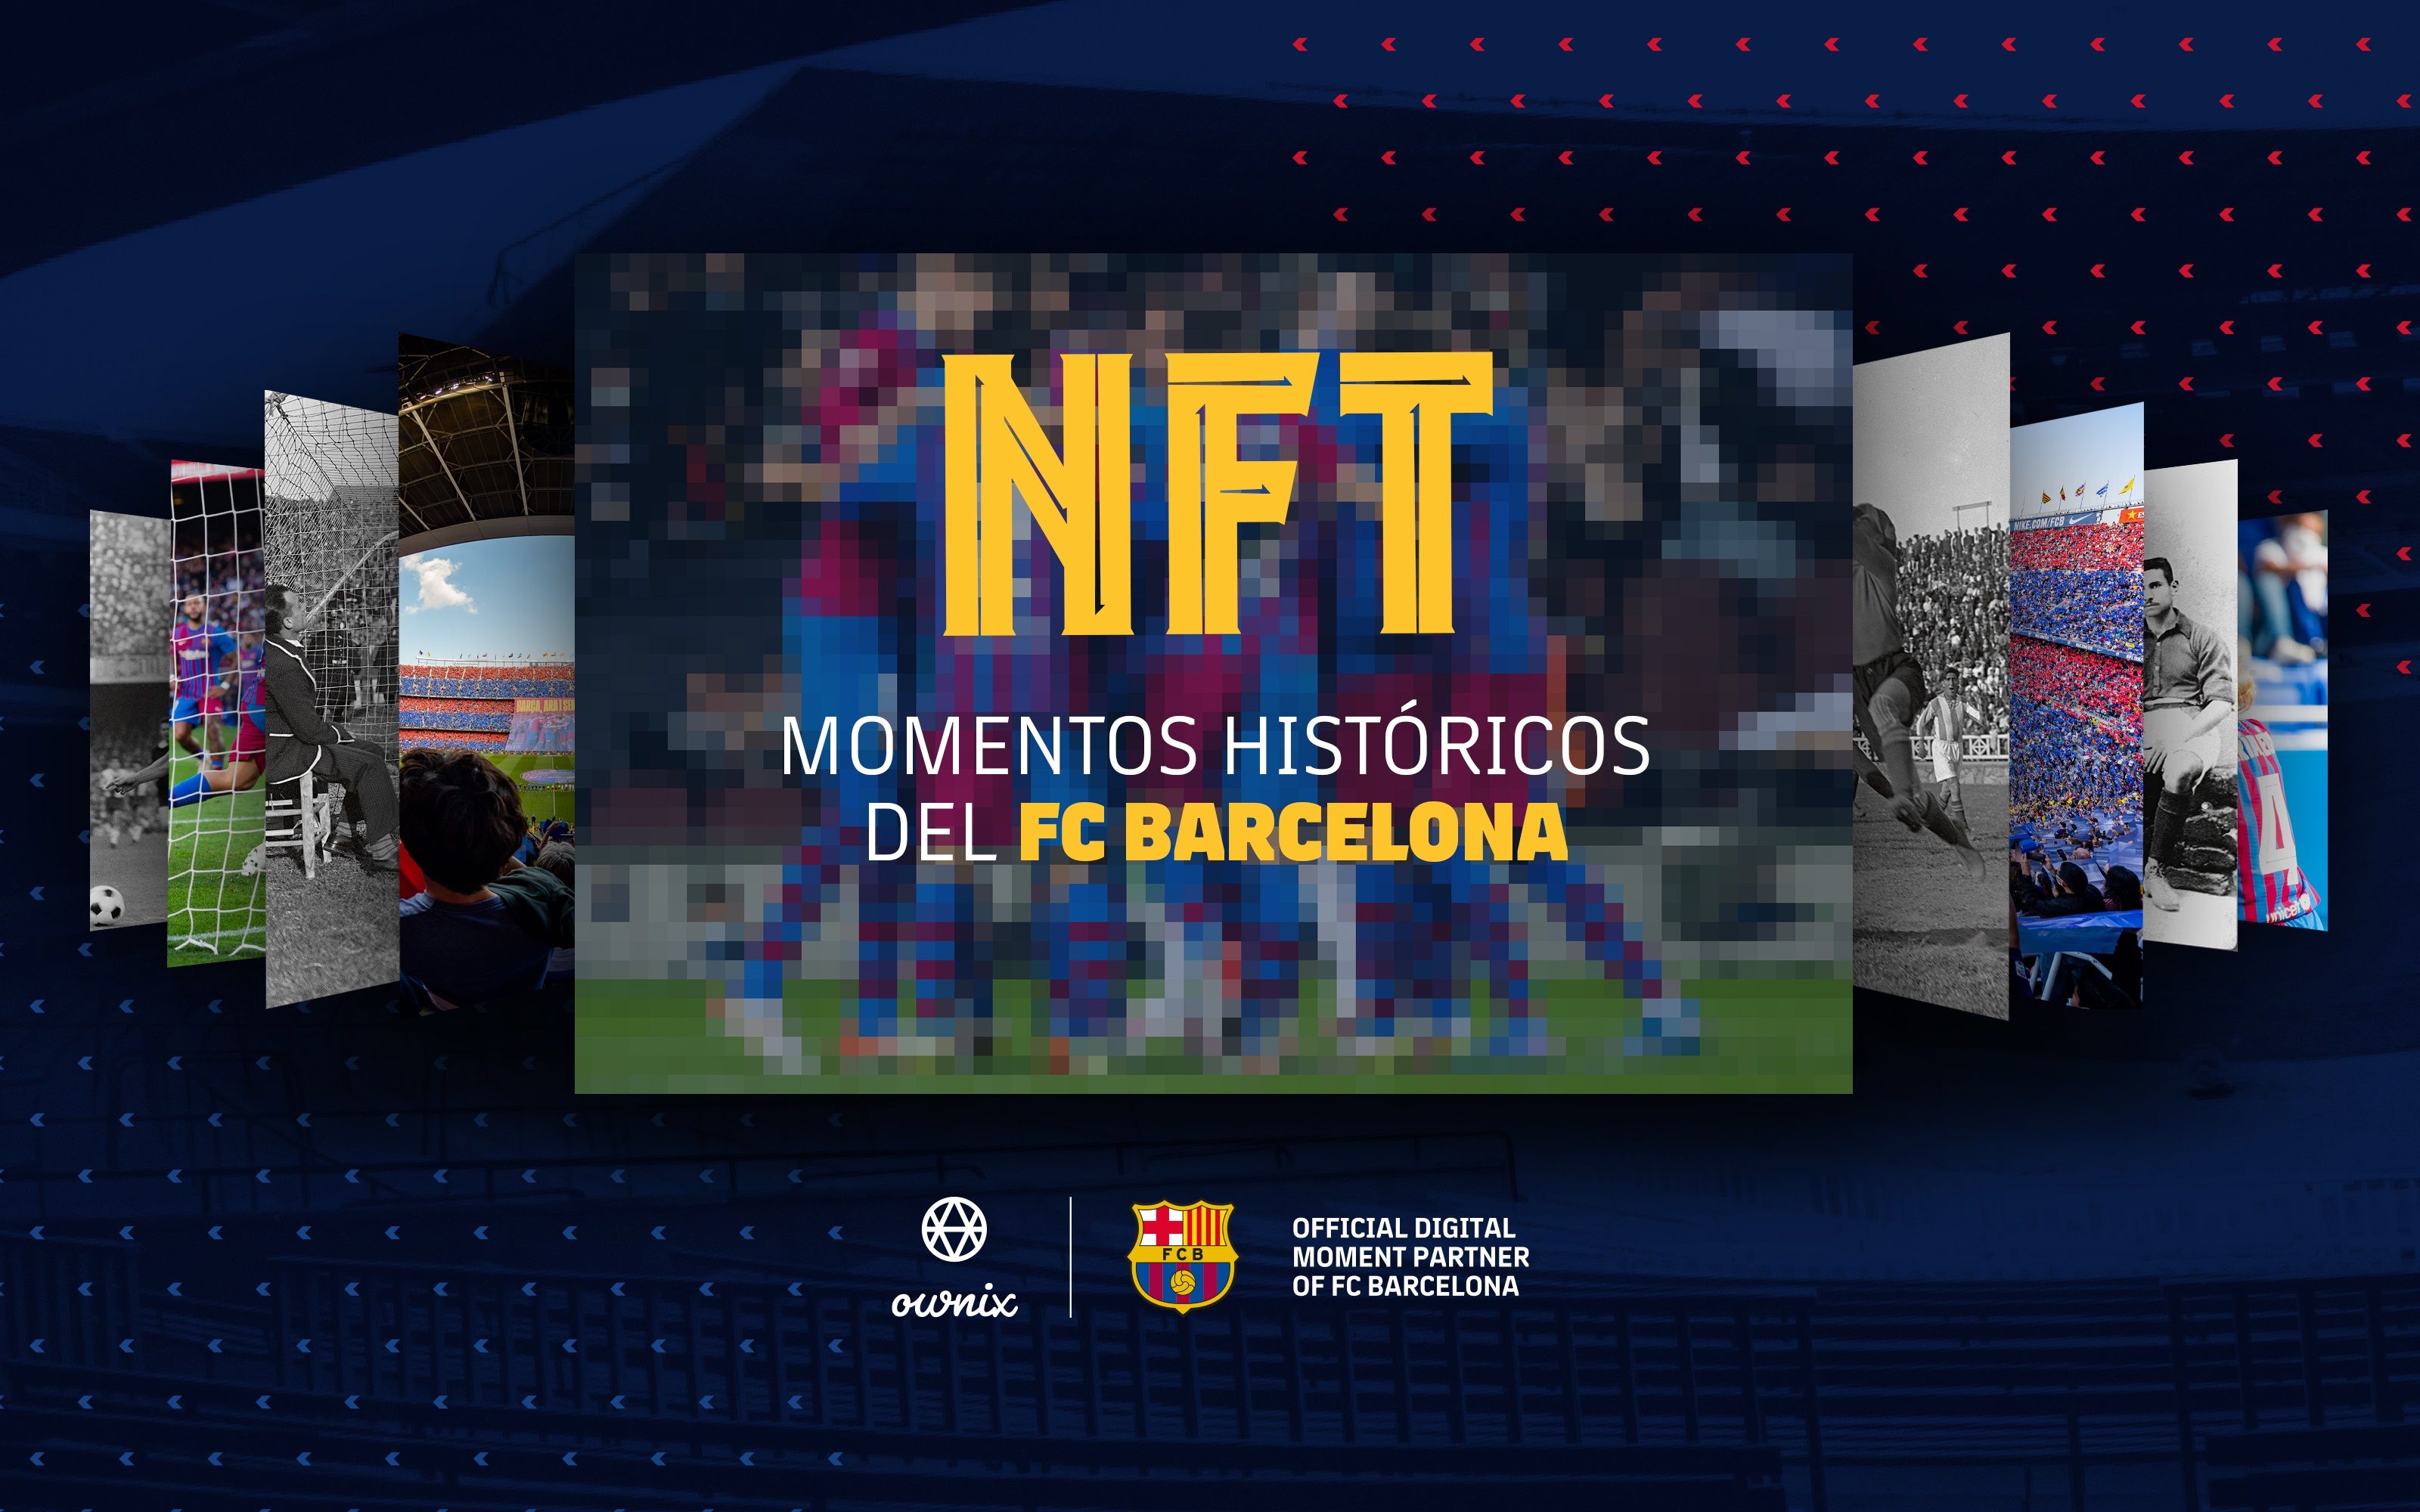 El Barça crea una línea de NFTs con imágenes del club